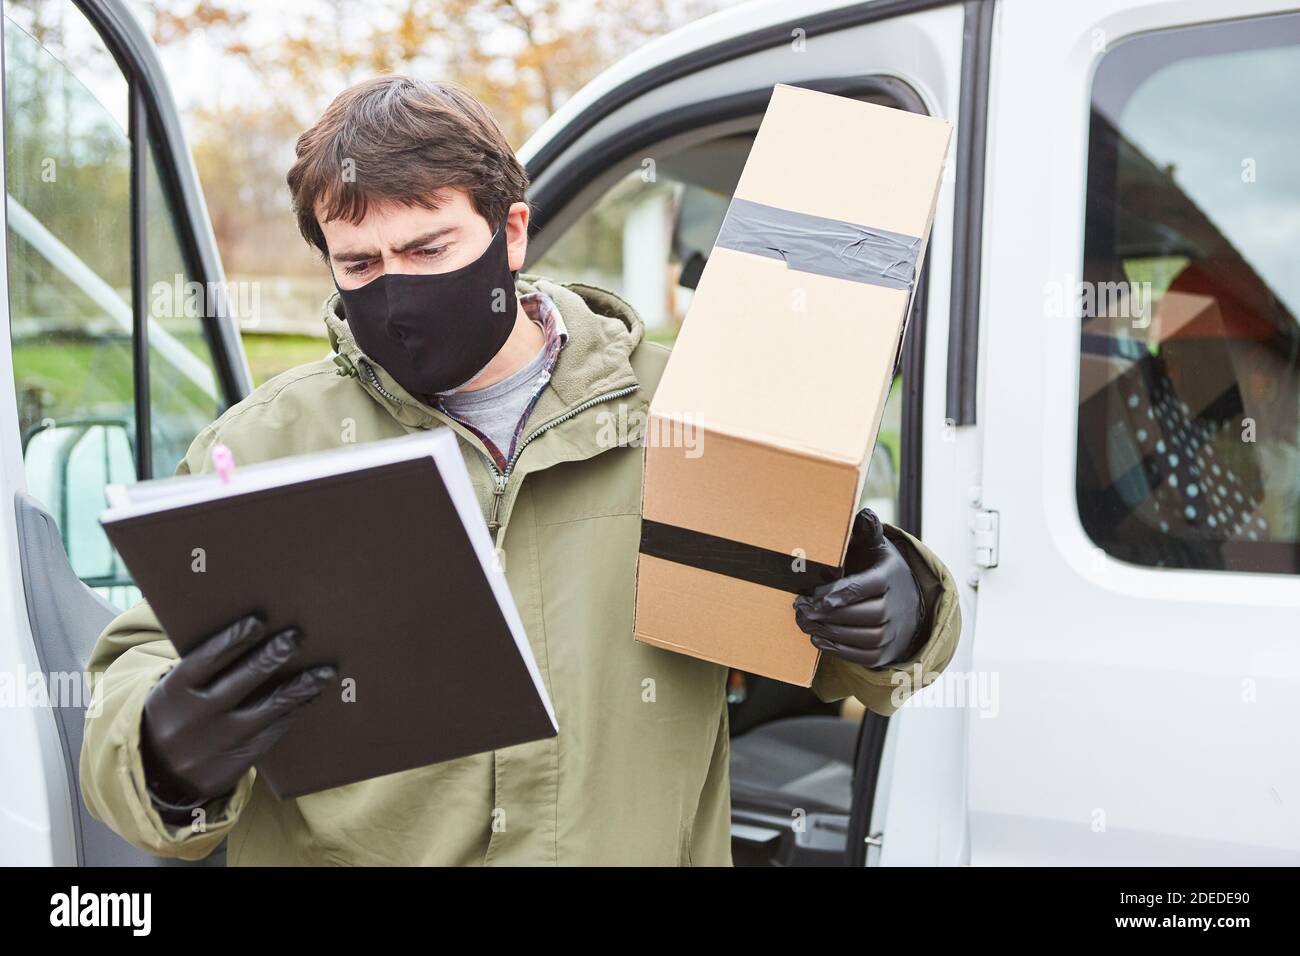 Paketzustellung Mann mit Gesichtsmaske wegen Covid-19 mit Paket sieht Lieferschein für die Lieferung zu Weihnachten Stockfoto